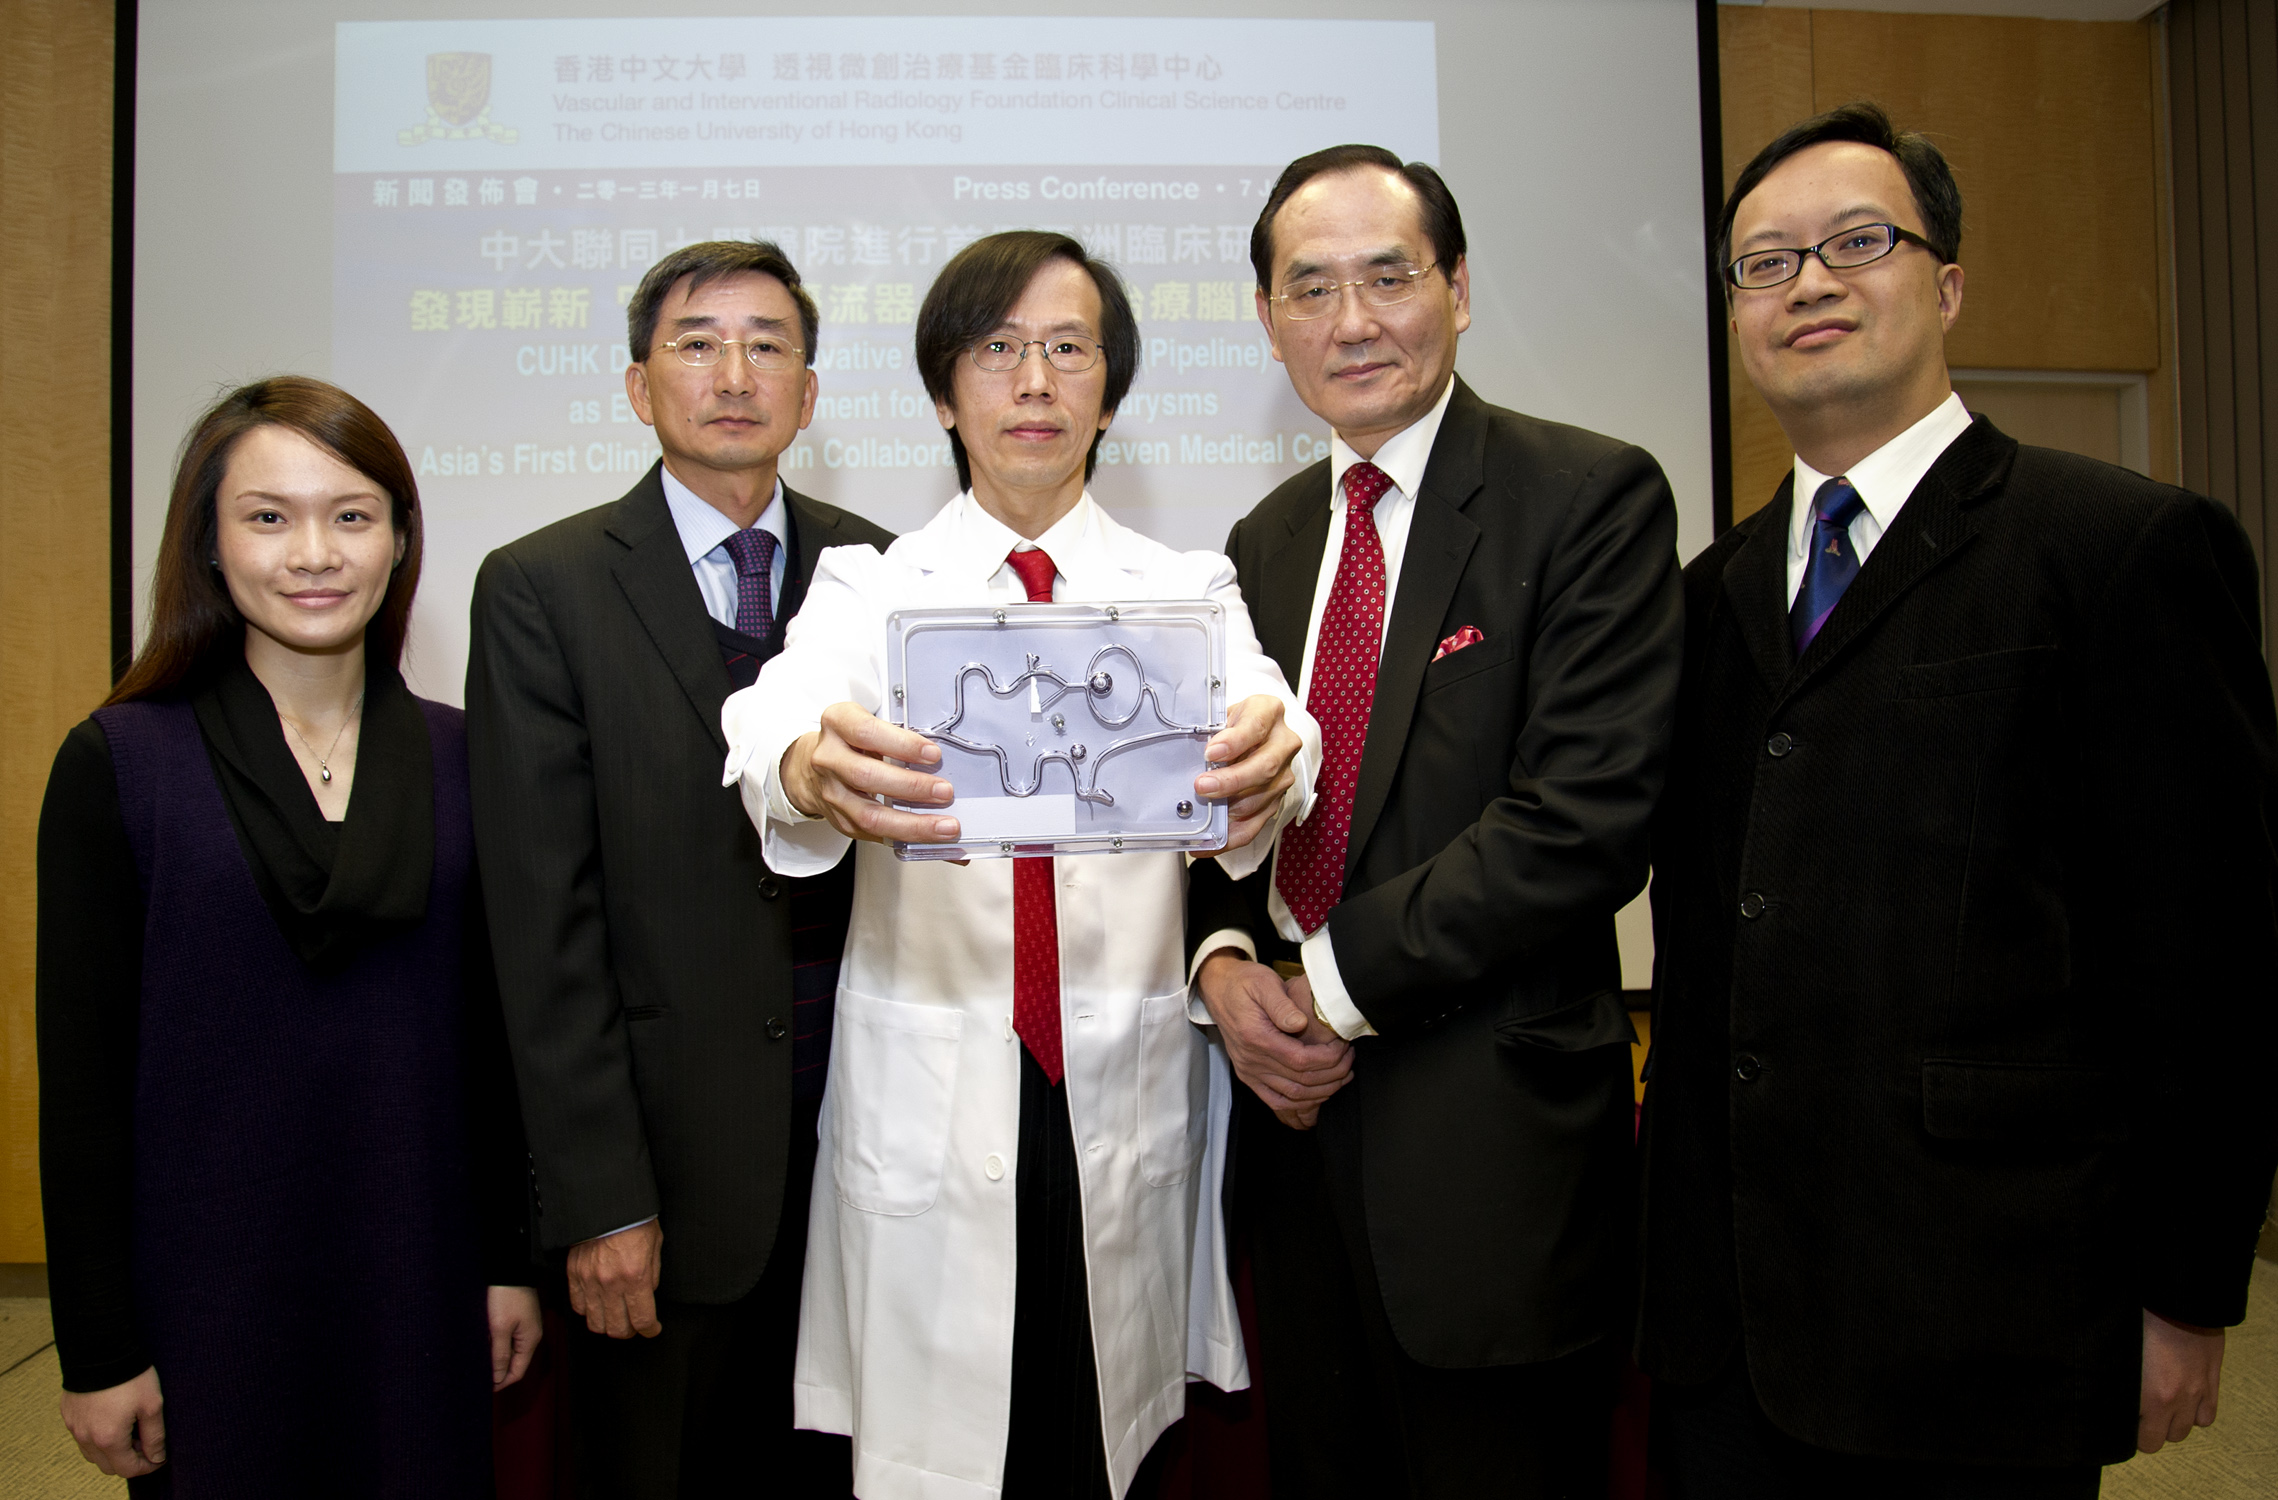 余俊豪教授与合作医院的研究团队代表